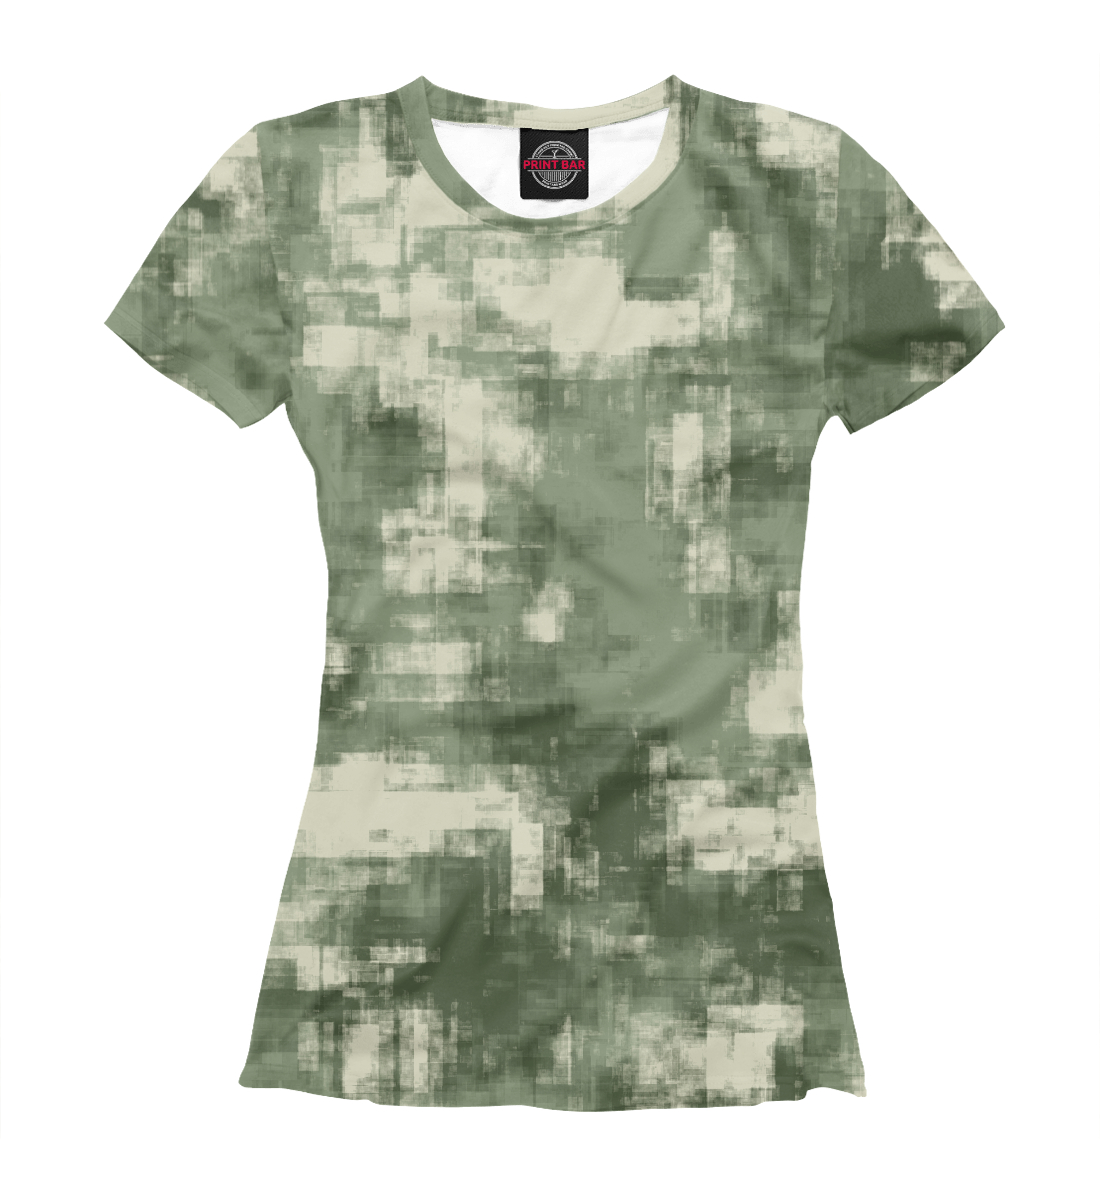 Футболка Военный камуфляж- одежда для мужчин и женщин для женщин, артикул: CMF-442561-fut-1mp